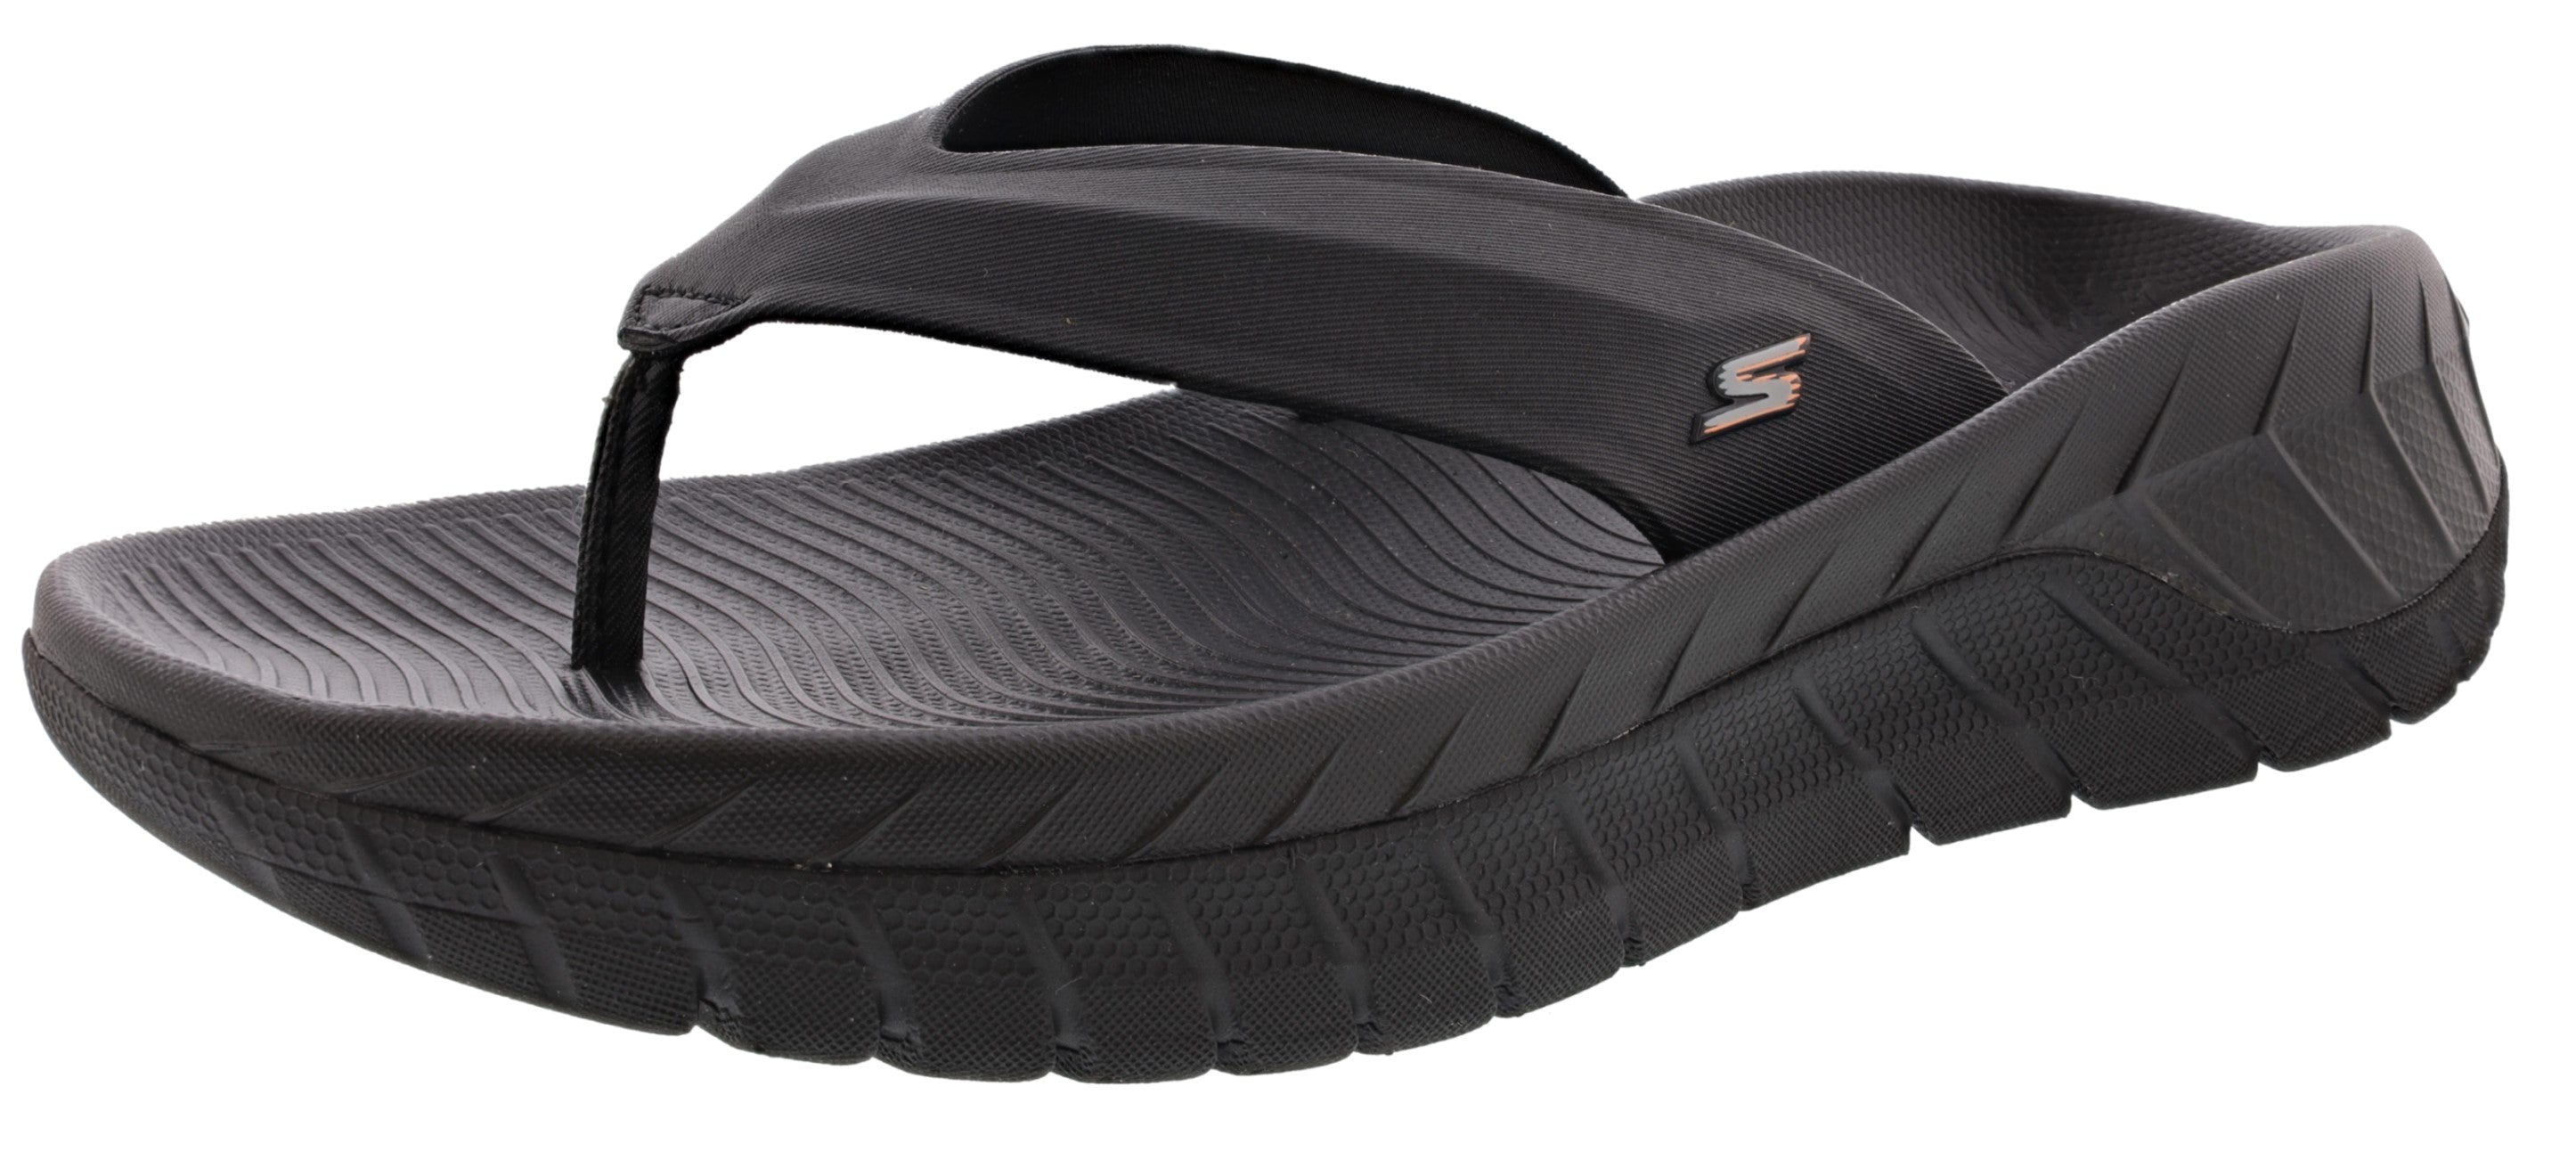 Go Sandals Men's | Shoe City